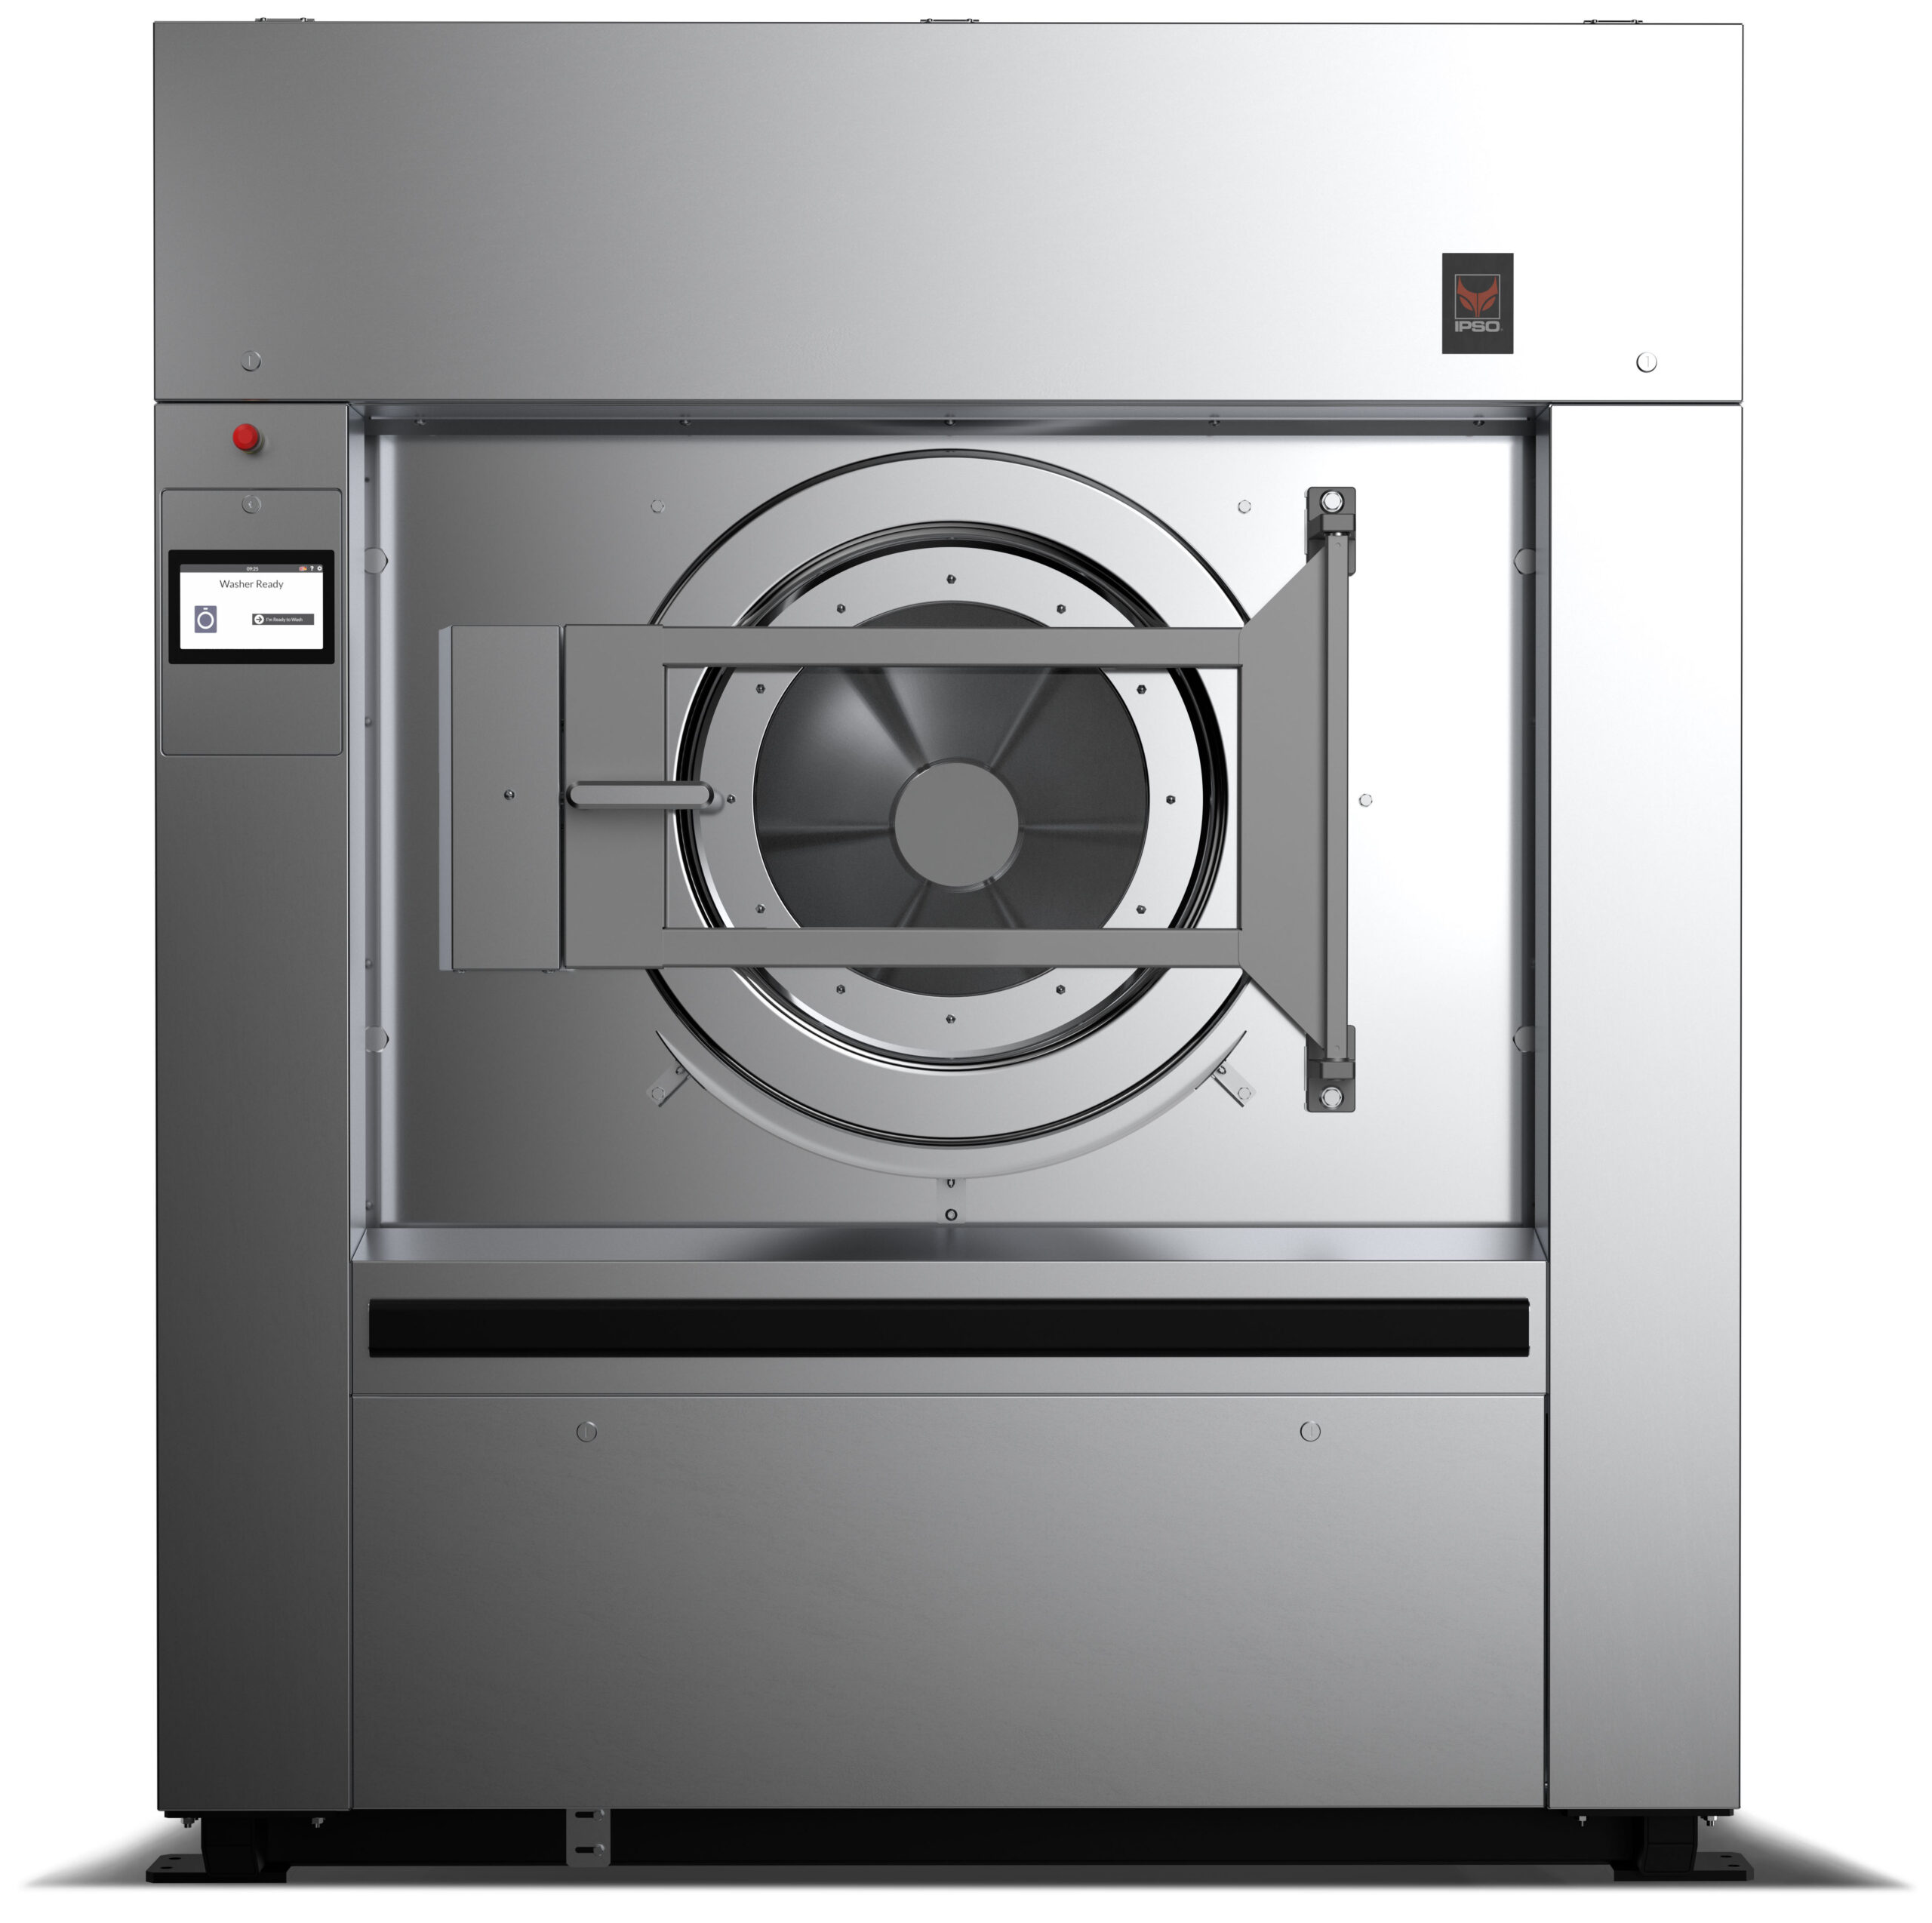 IPSO large soft-mount industrial washing machine